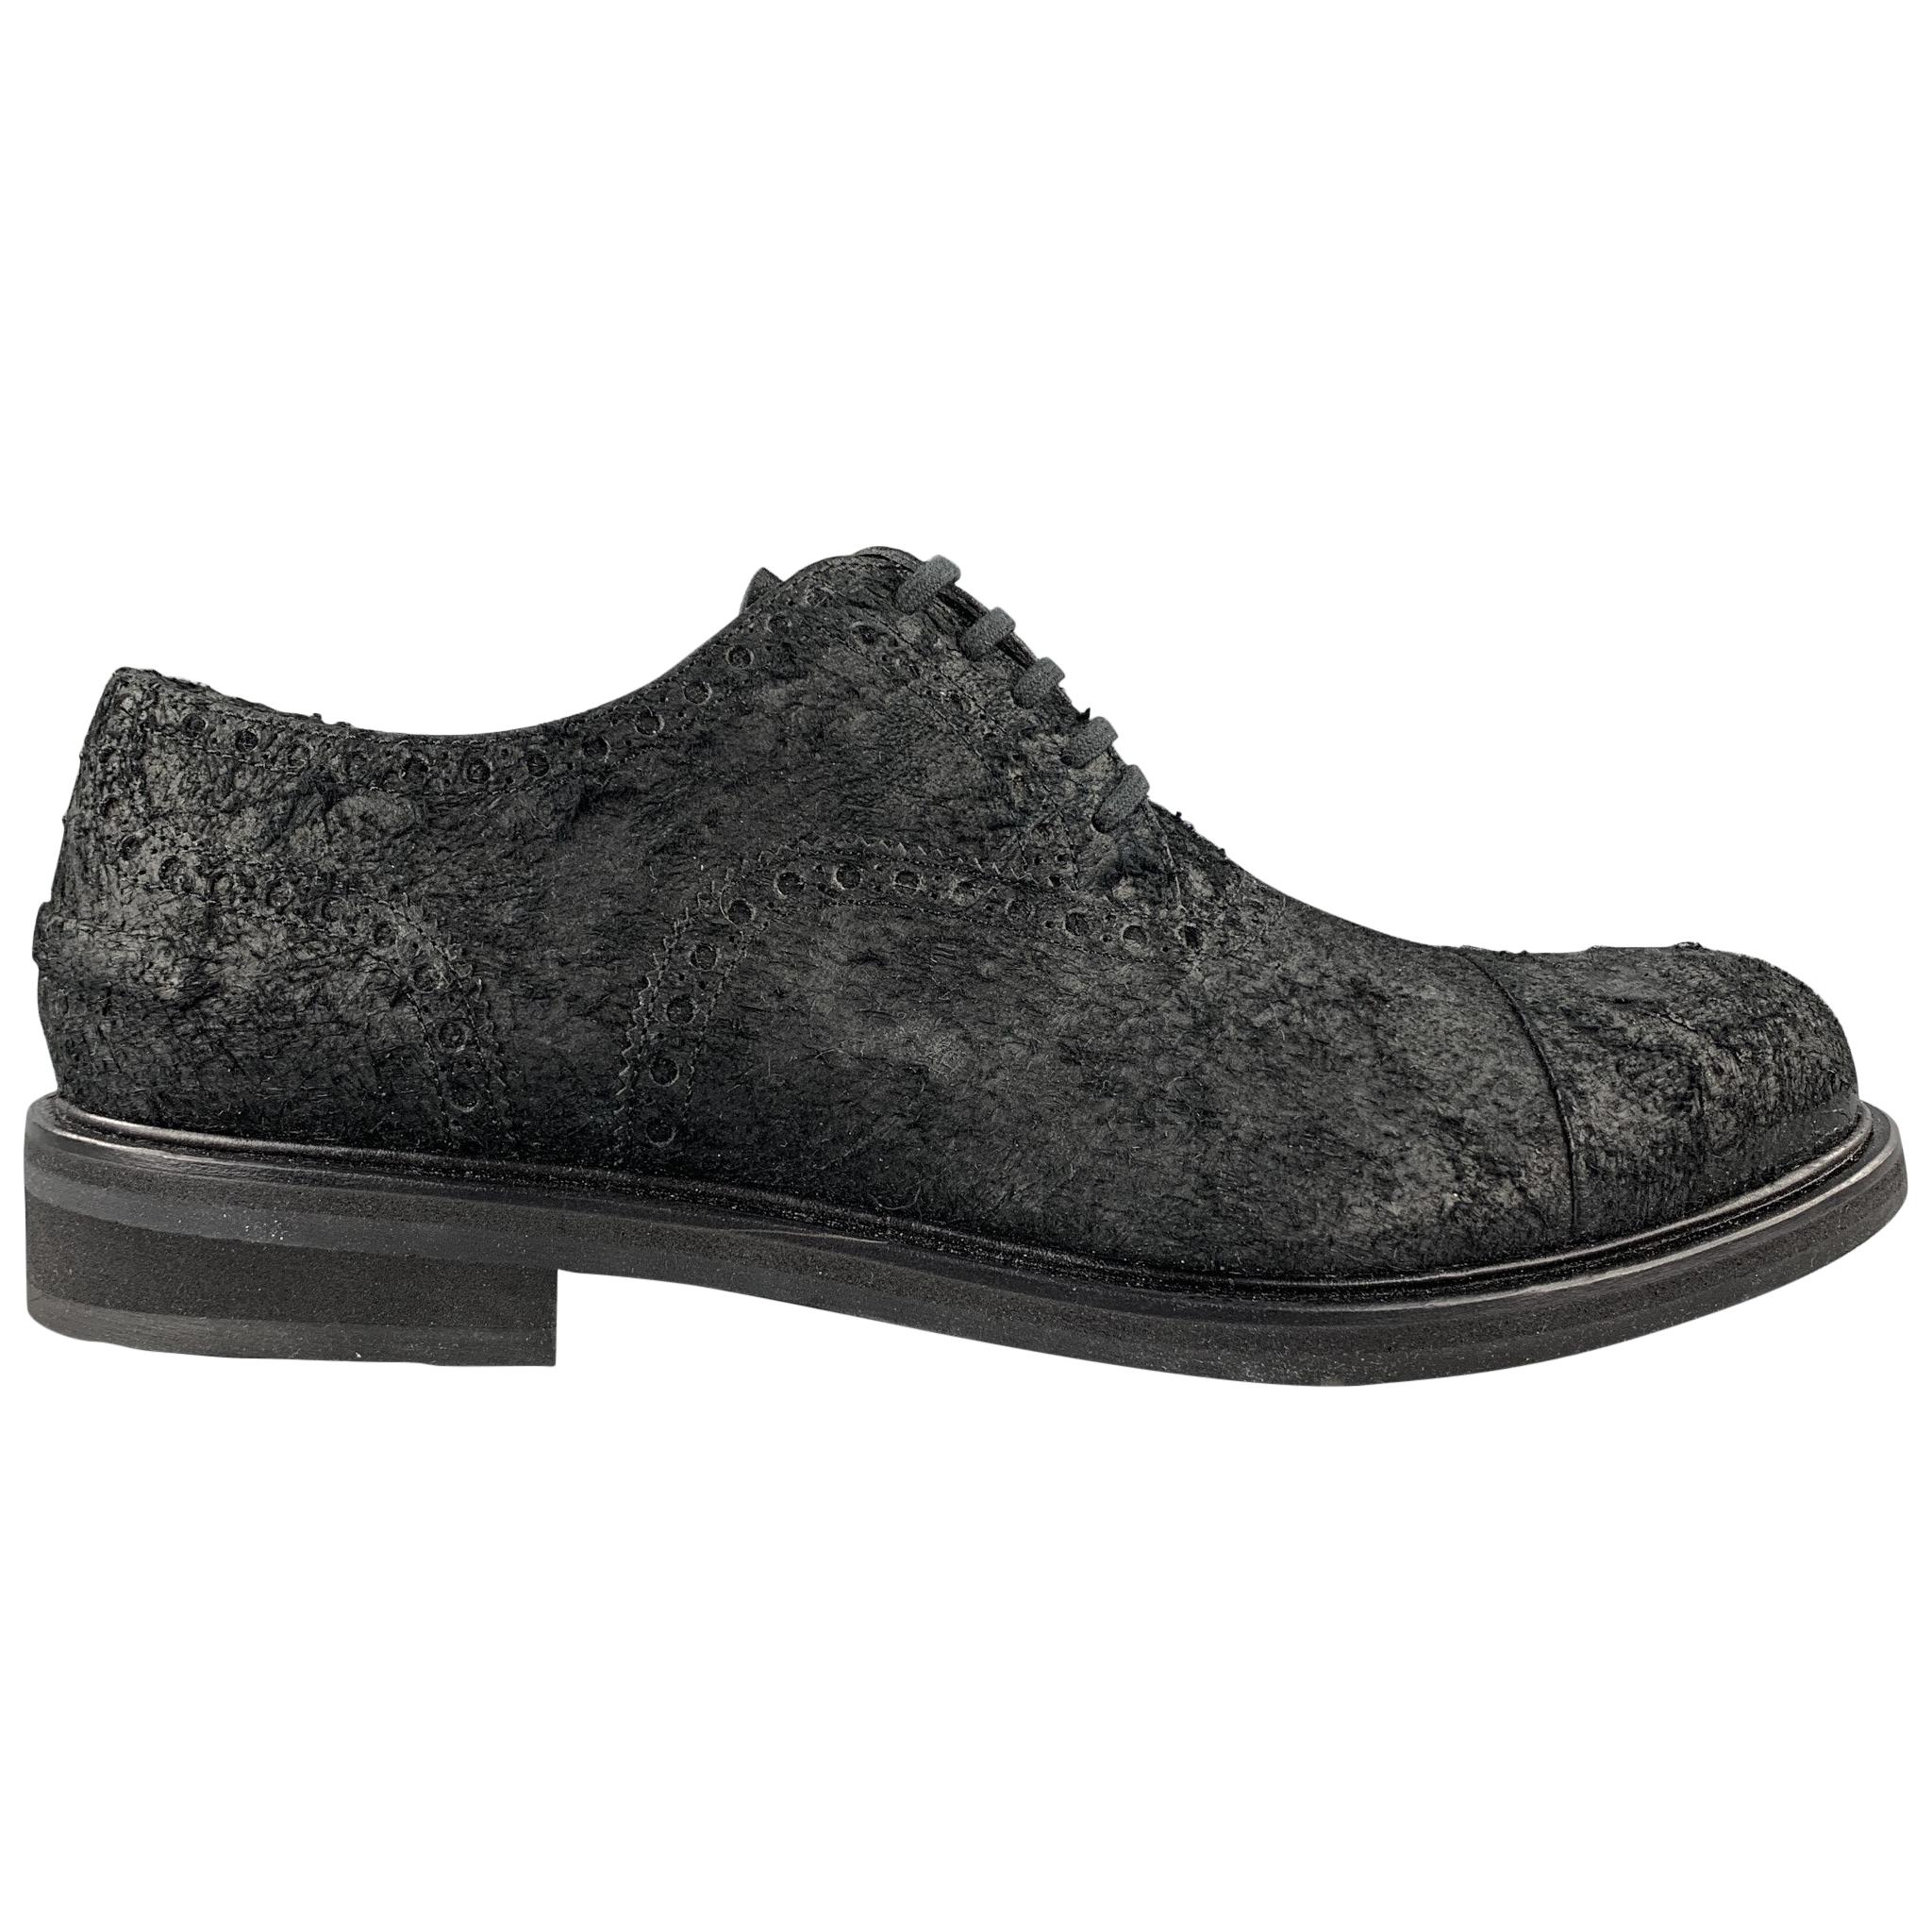 NEIL BARRETT Men's Size 10 Black Textured Suede Cap Toe Lace Up Shoes - NEW